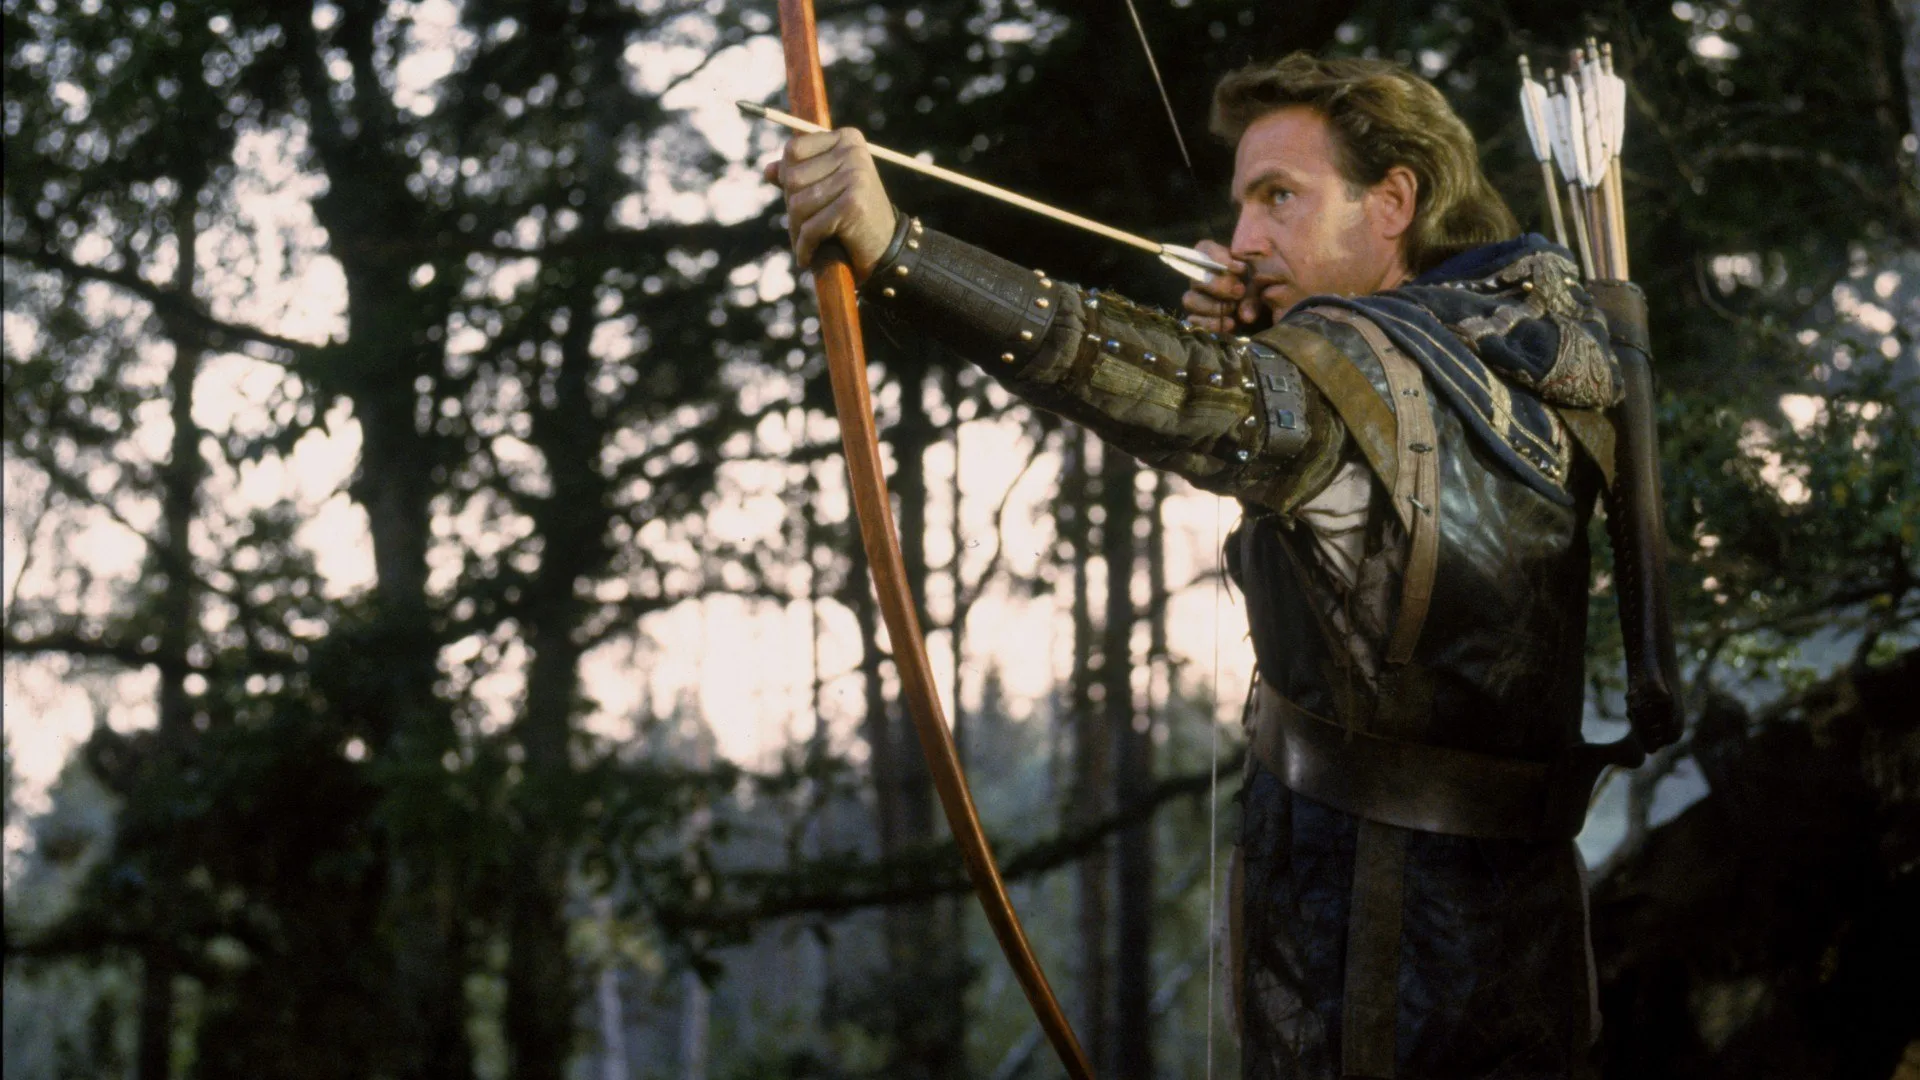 Robin Hood principe dei ladri